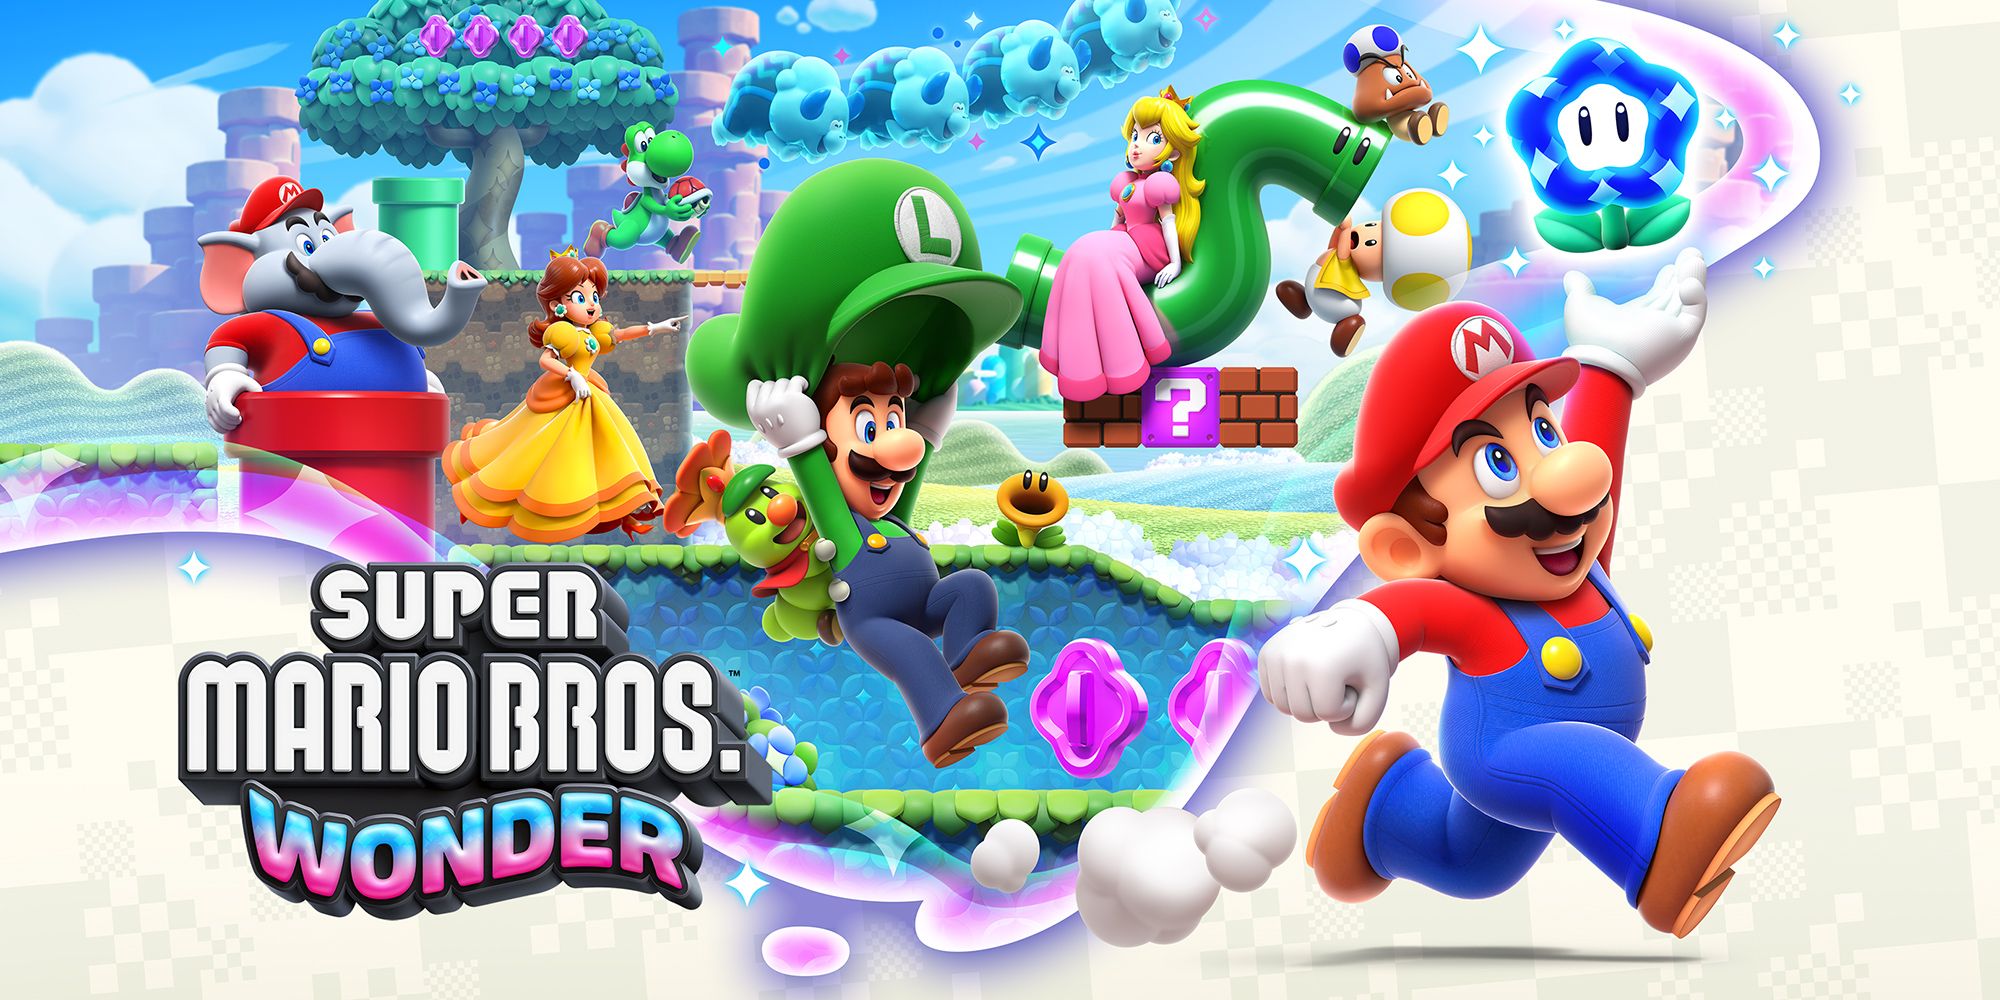 Super Mario Bros. Wonder, è record in Europa. Il miglior lancio di sempre per un Mario 2D 